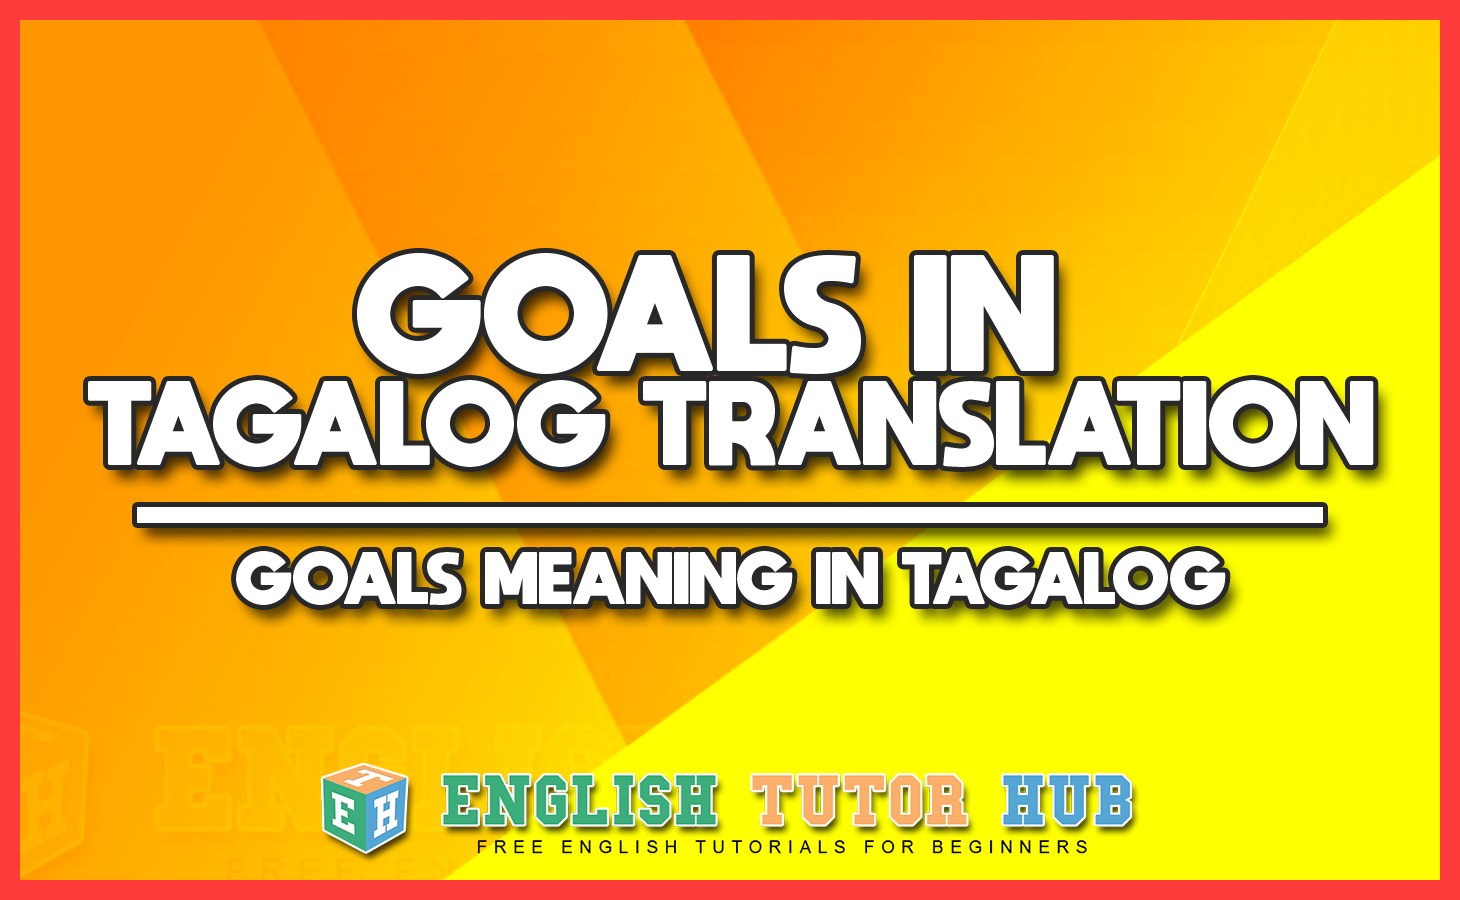 GOALS IN TAGALOG TRANSLATION